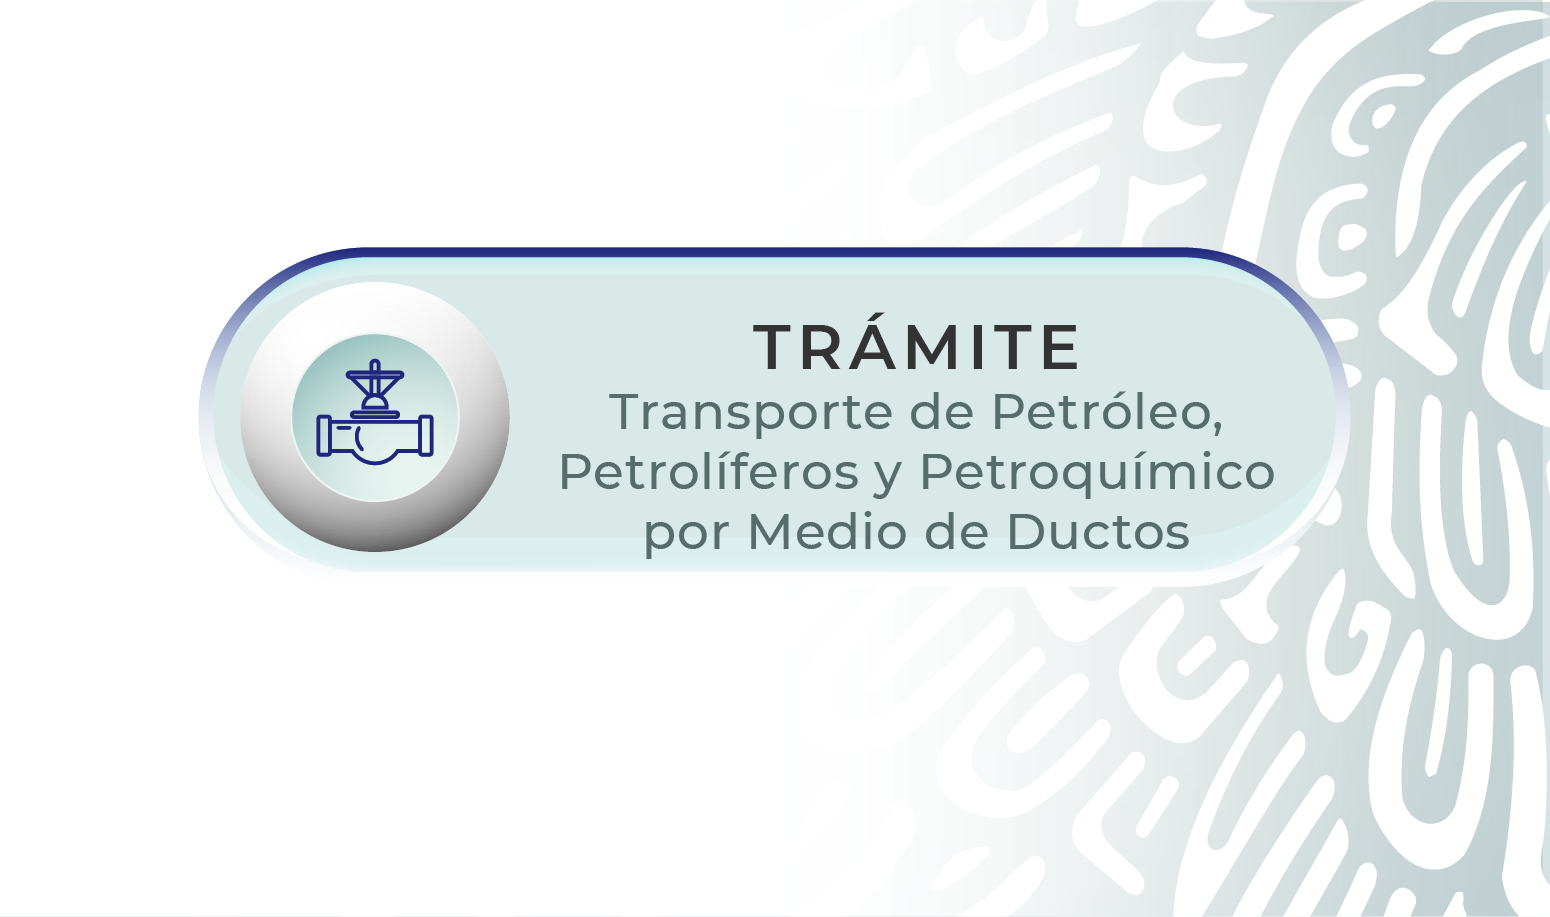 imagen ilustrativa con la palabra trámite transporte de petróleo, petrolíferos y petroquímicos por medio de ductos